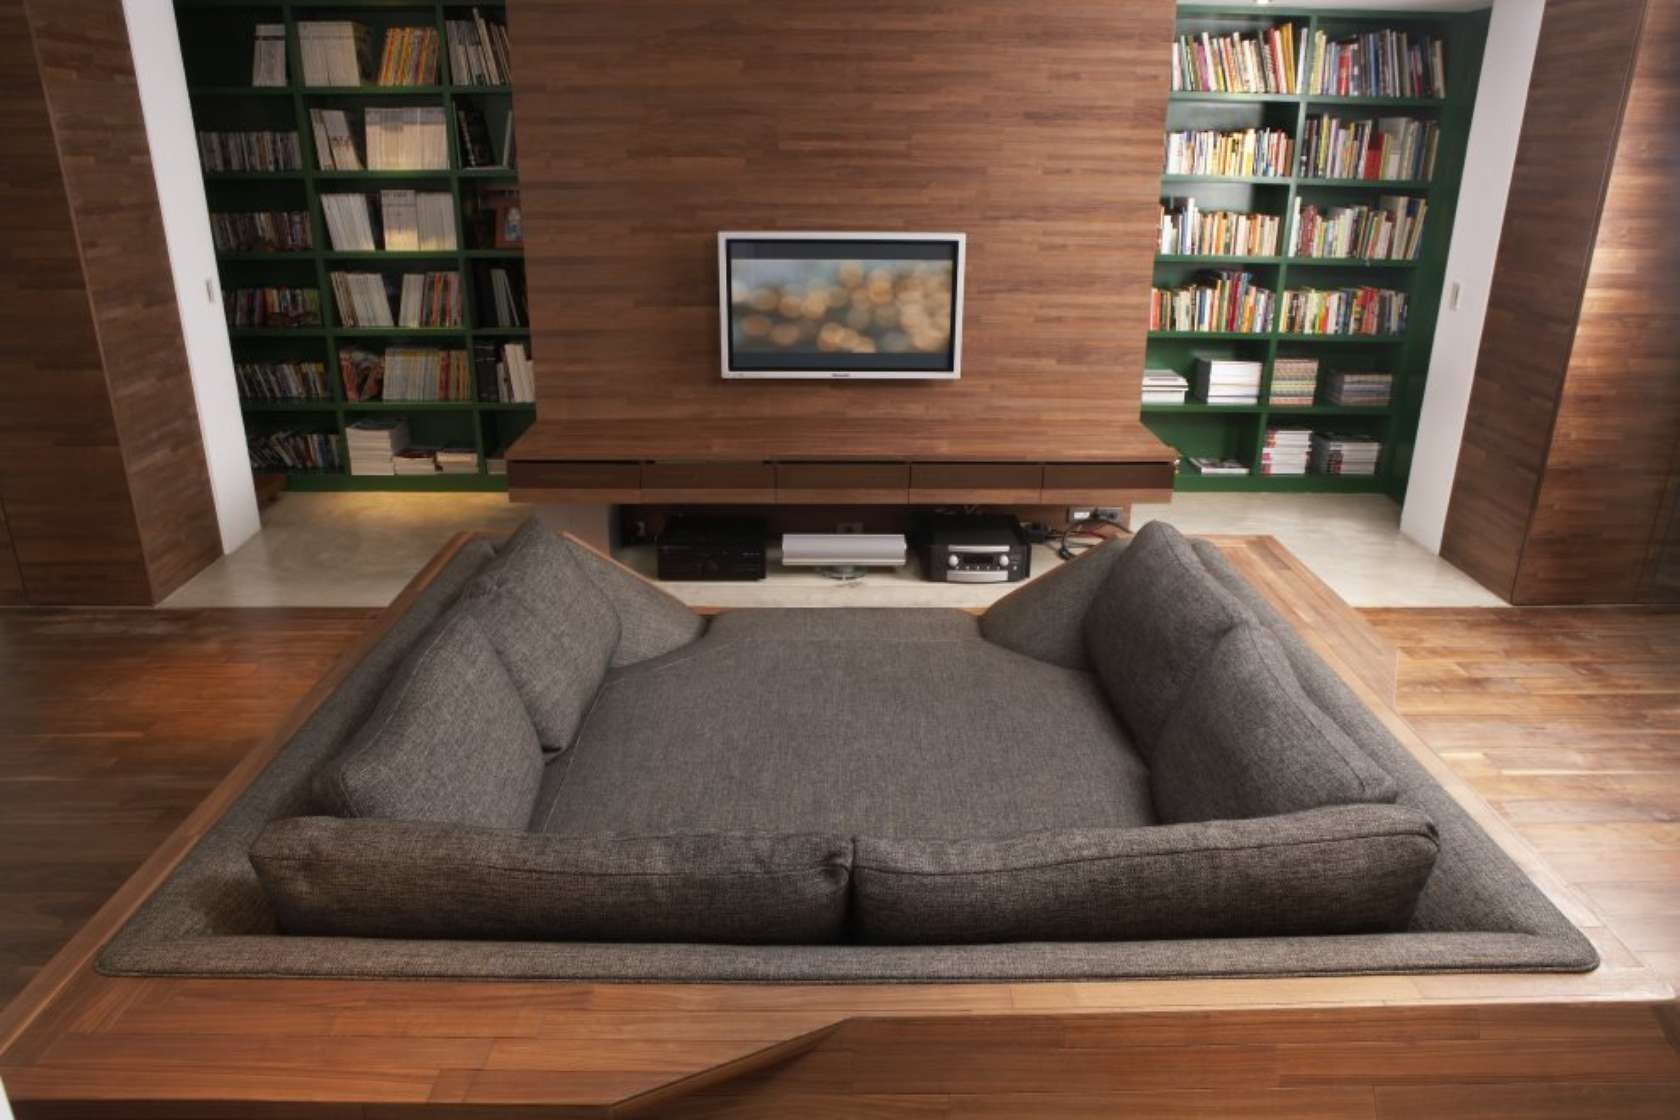 диван для тяжелых людей